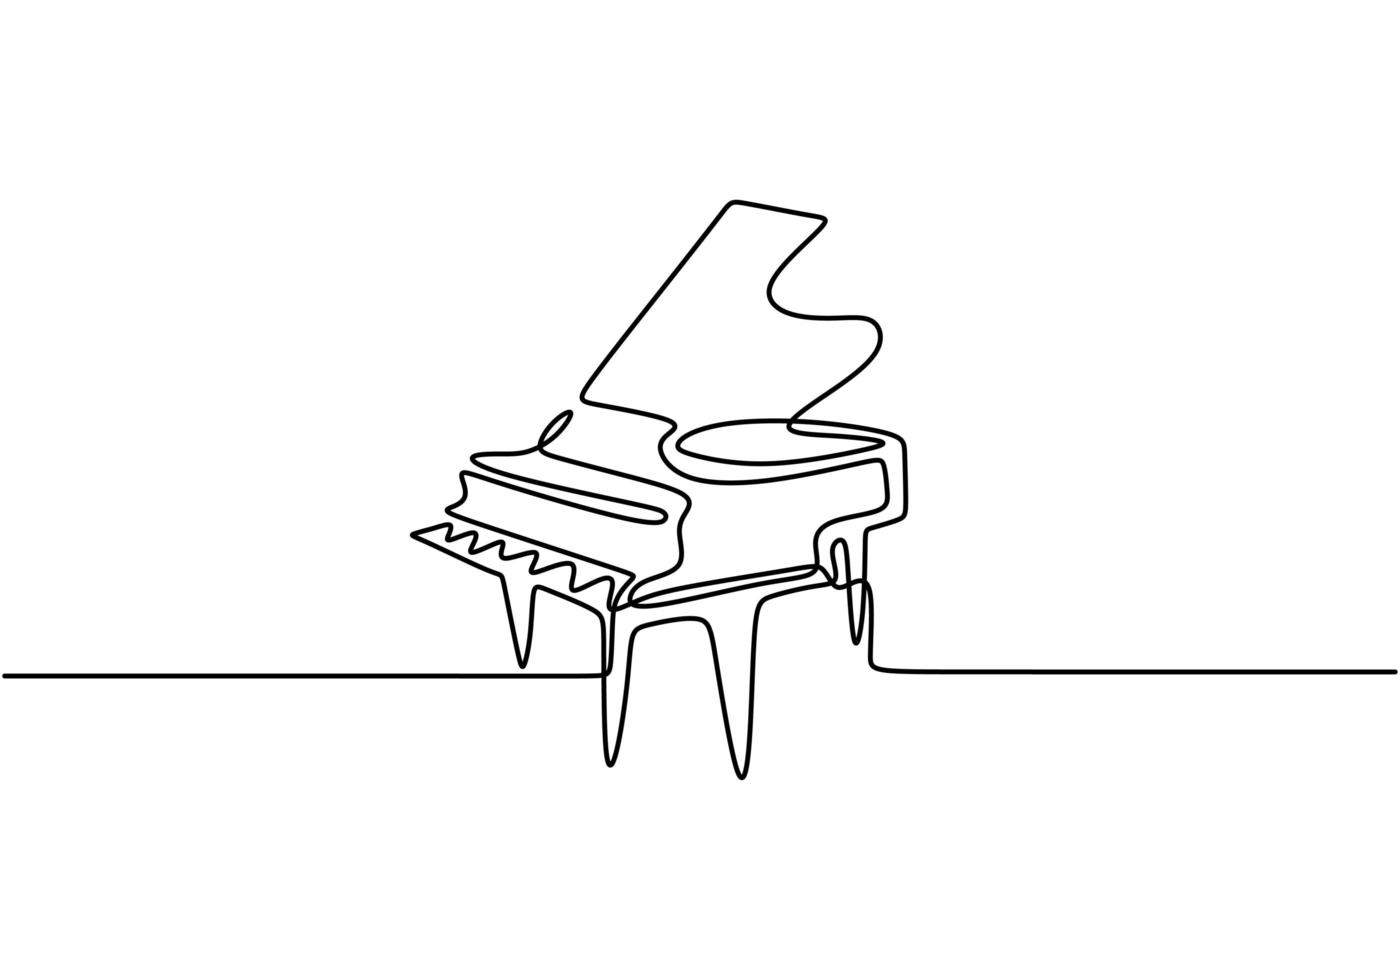 dessin d'une ligne de piano. illustration vectorielle continue simple main dessinée, instrument de musique classique. art de minimalisme isolé sur fond blanc. vecteur